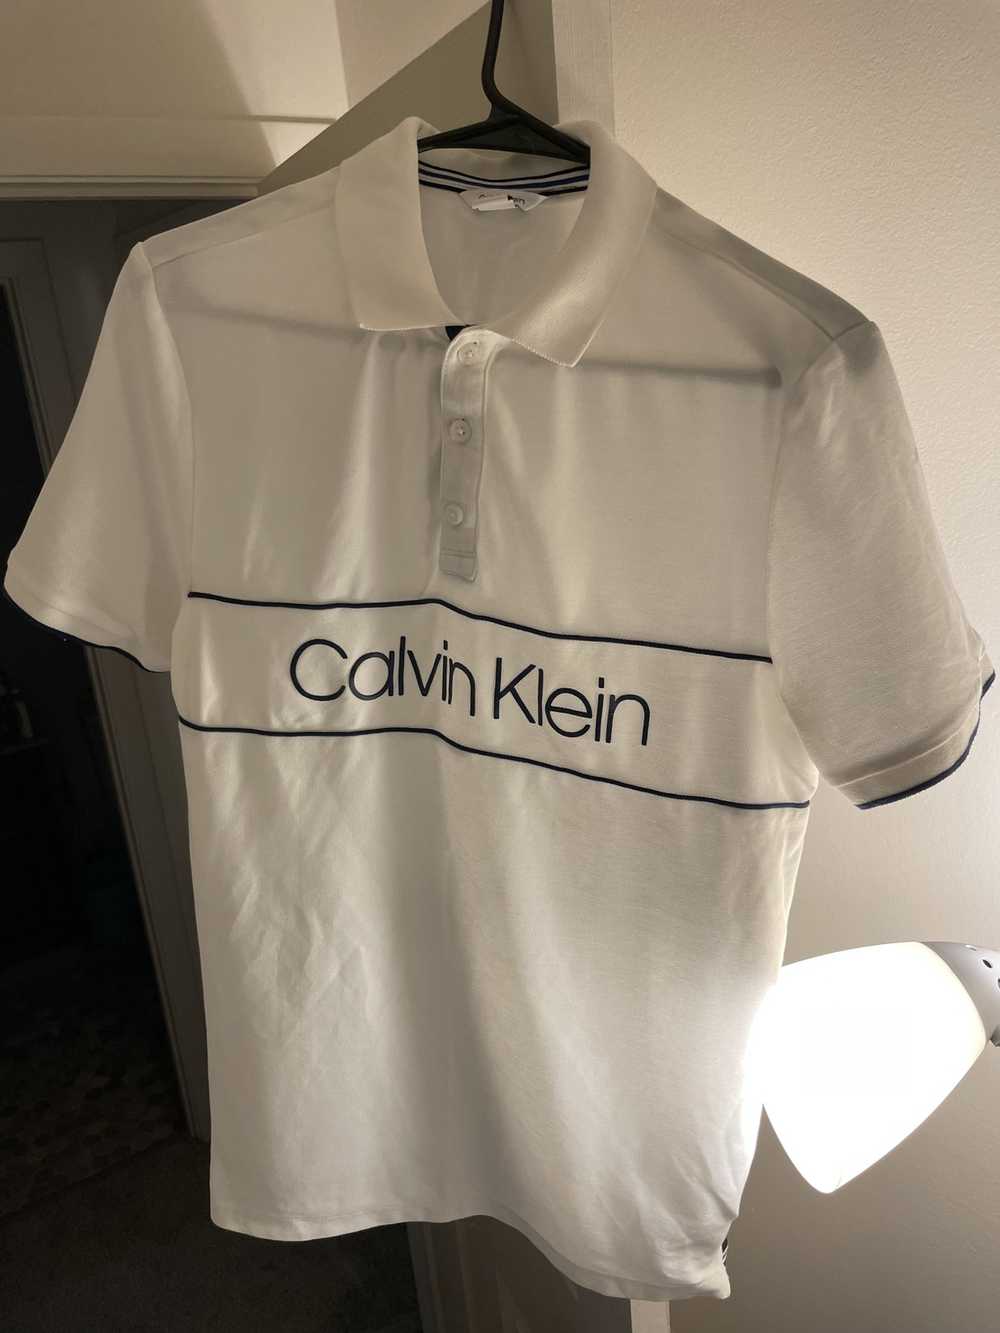 Calvin Klein Calvin Klein LOGO polo shirt - image 3